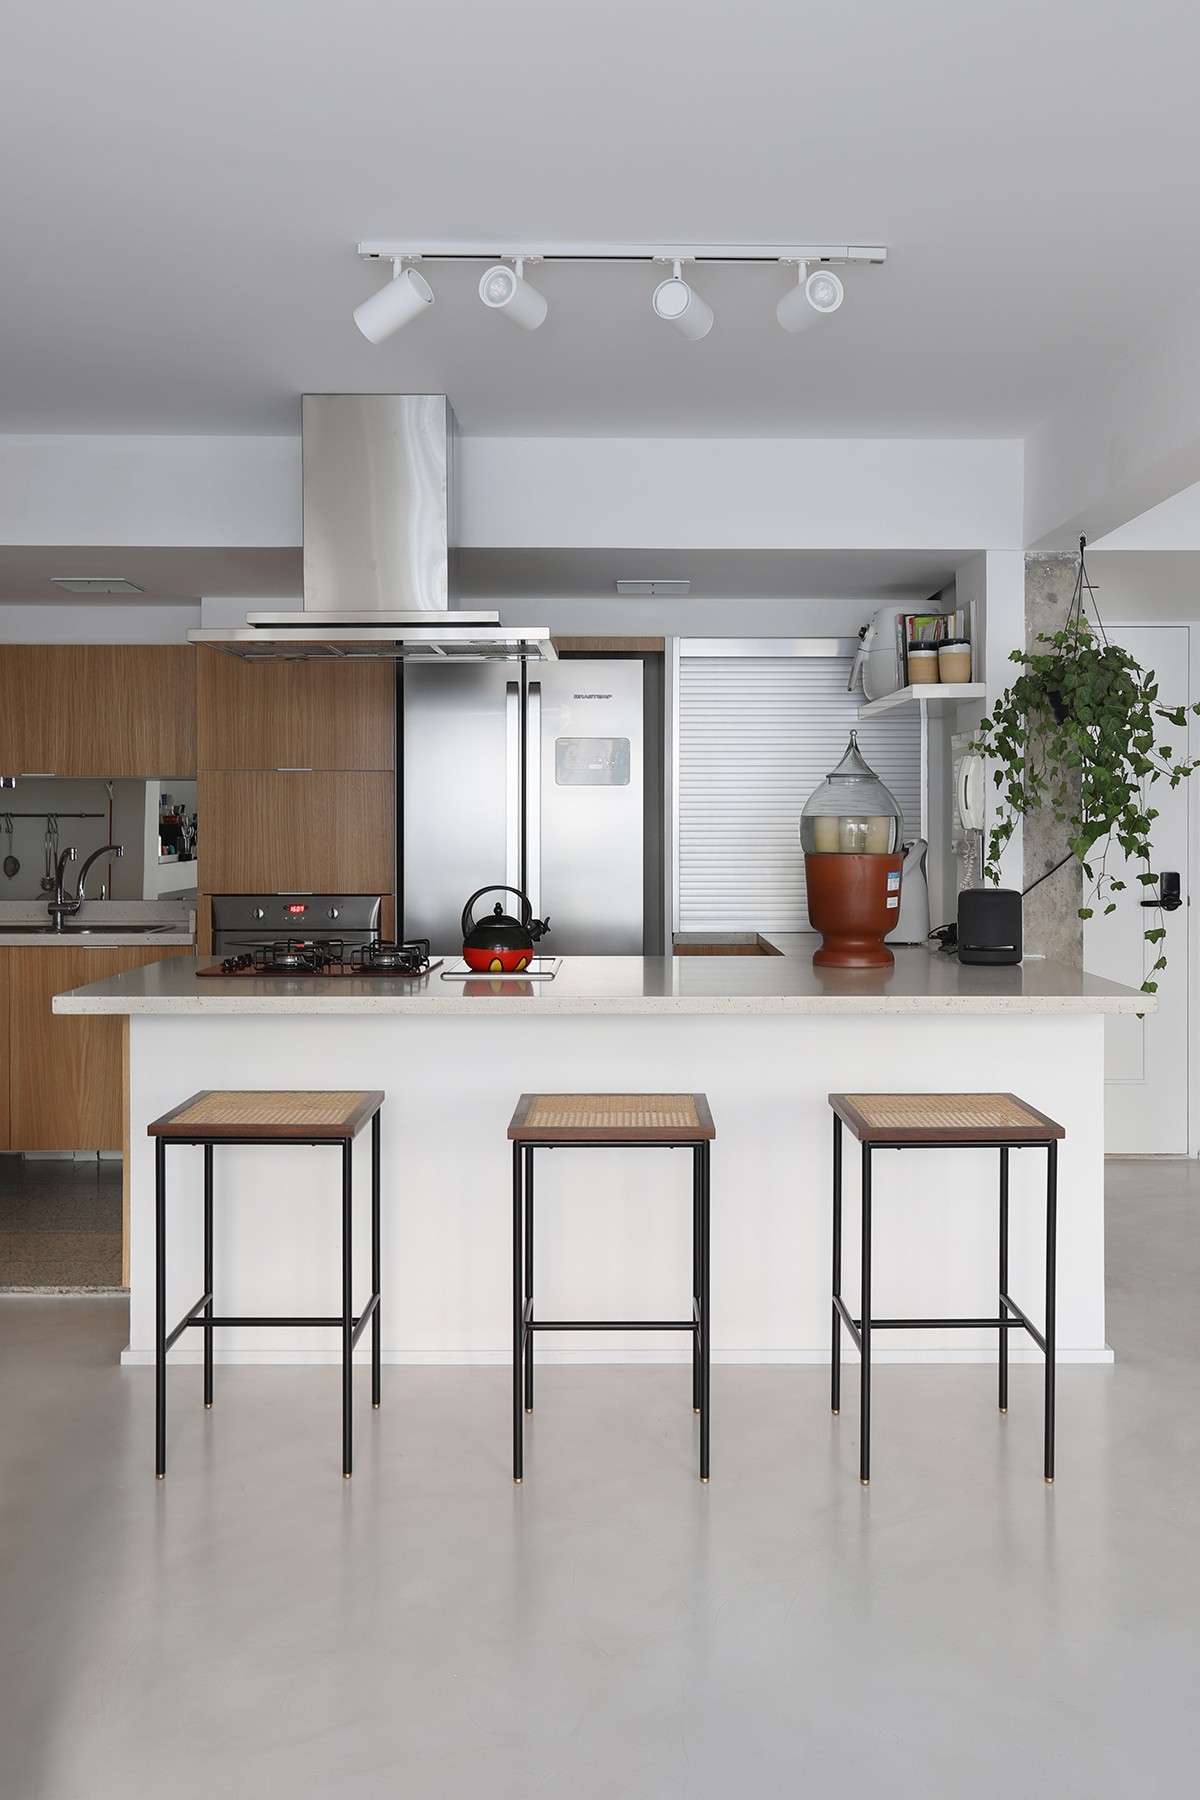 Aberta, a cozinha imprime uma atmosfera mais clean com tons sóbrios, aquecida pela madeira (Foto: Mariana Orsi / Divulgação)